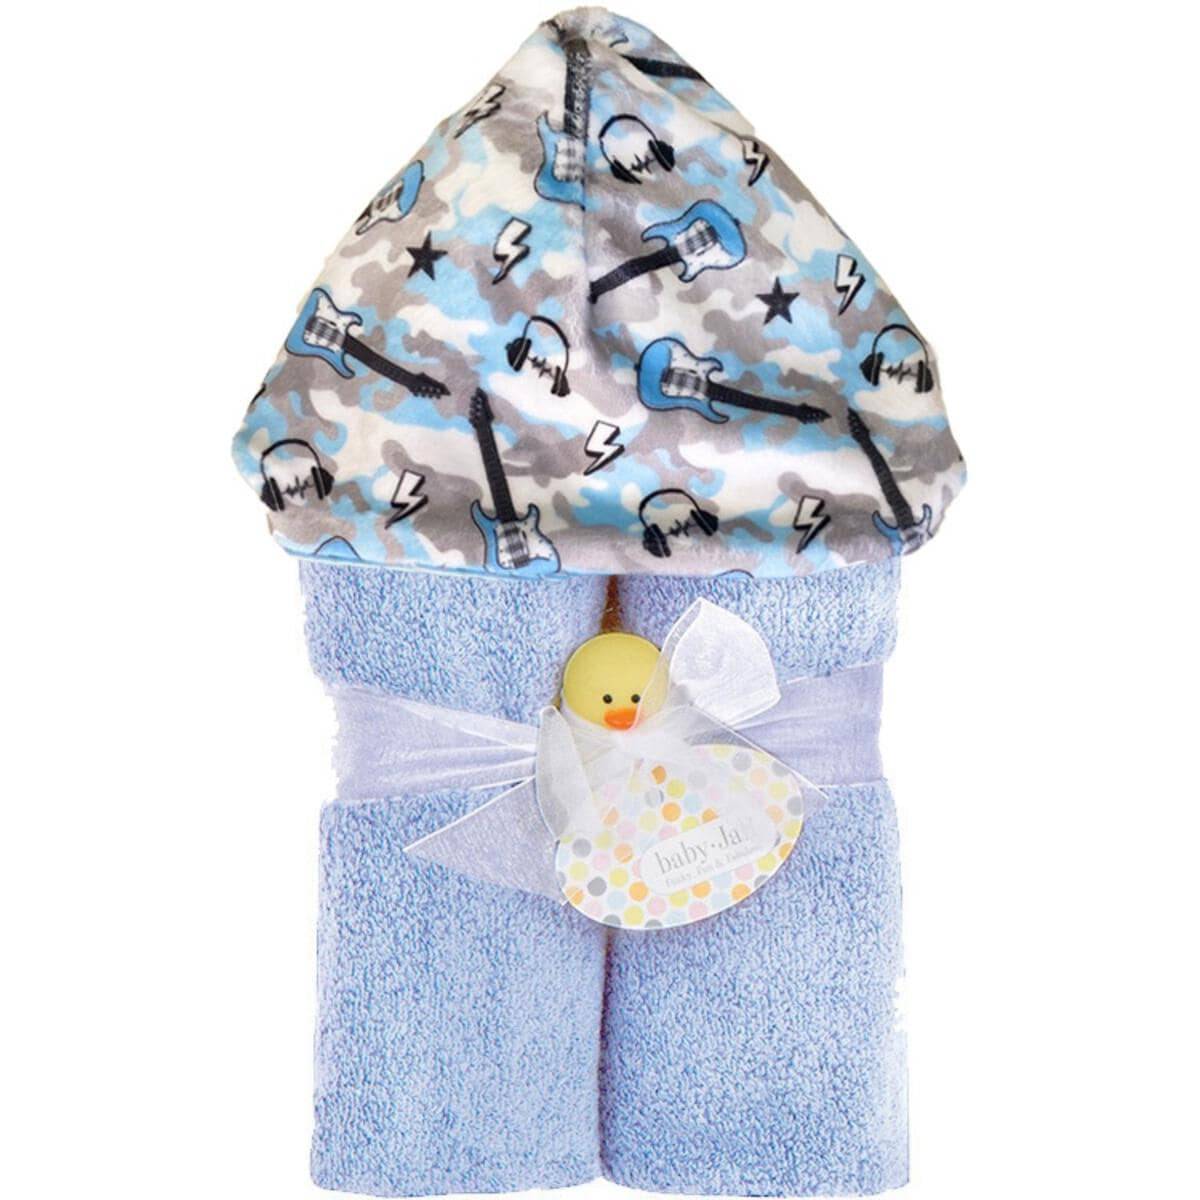 Rock On Deluxe Hooded Towel - Twinkle Twinkle Little One